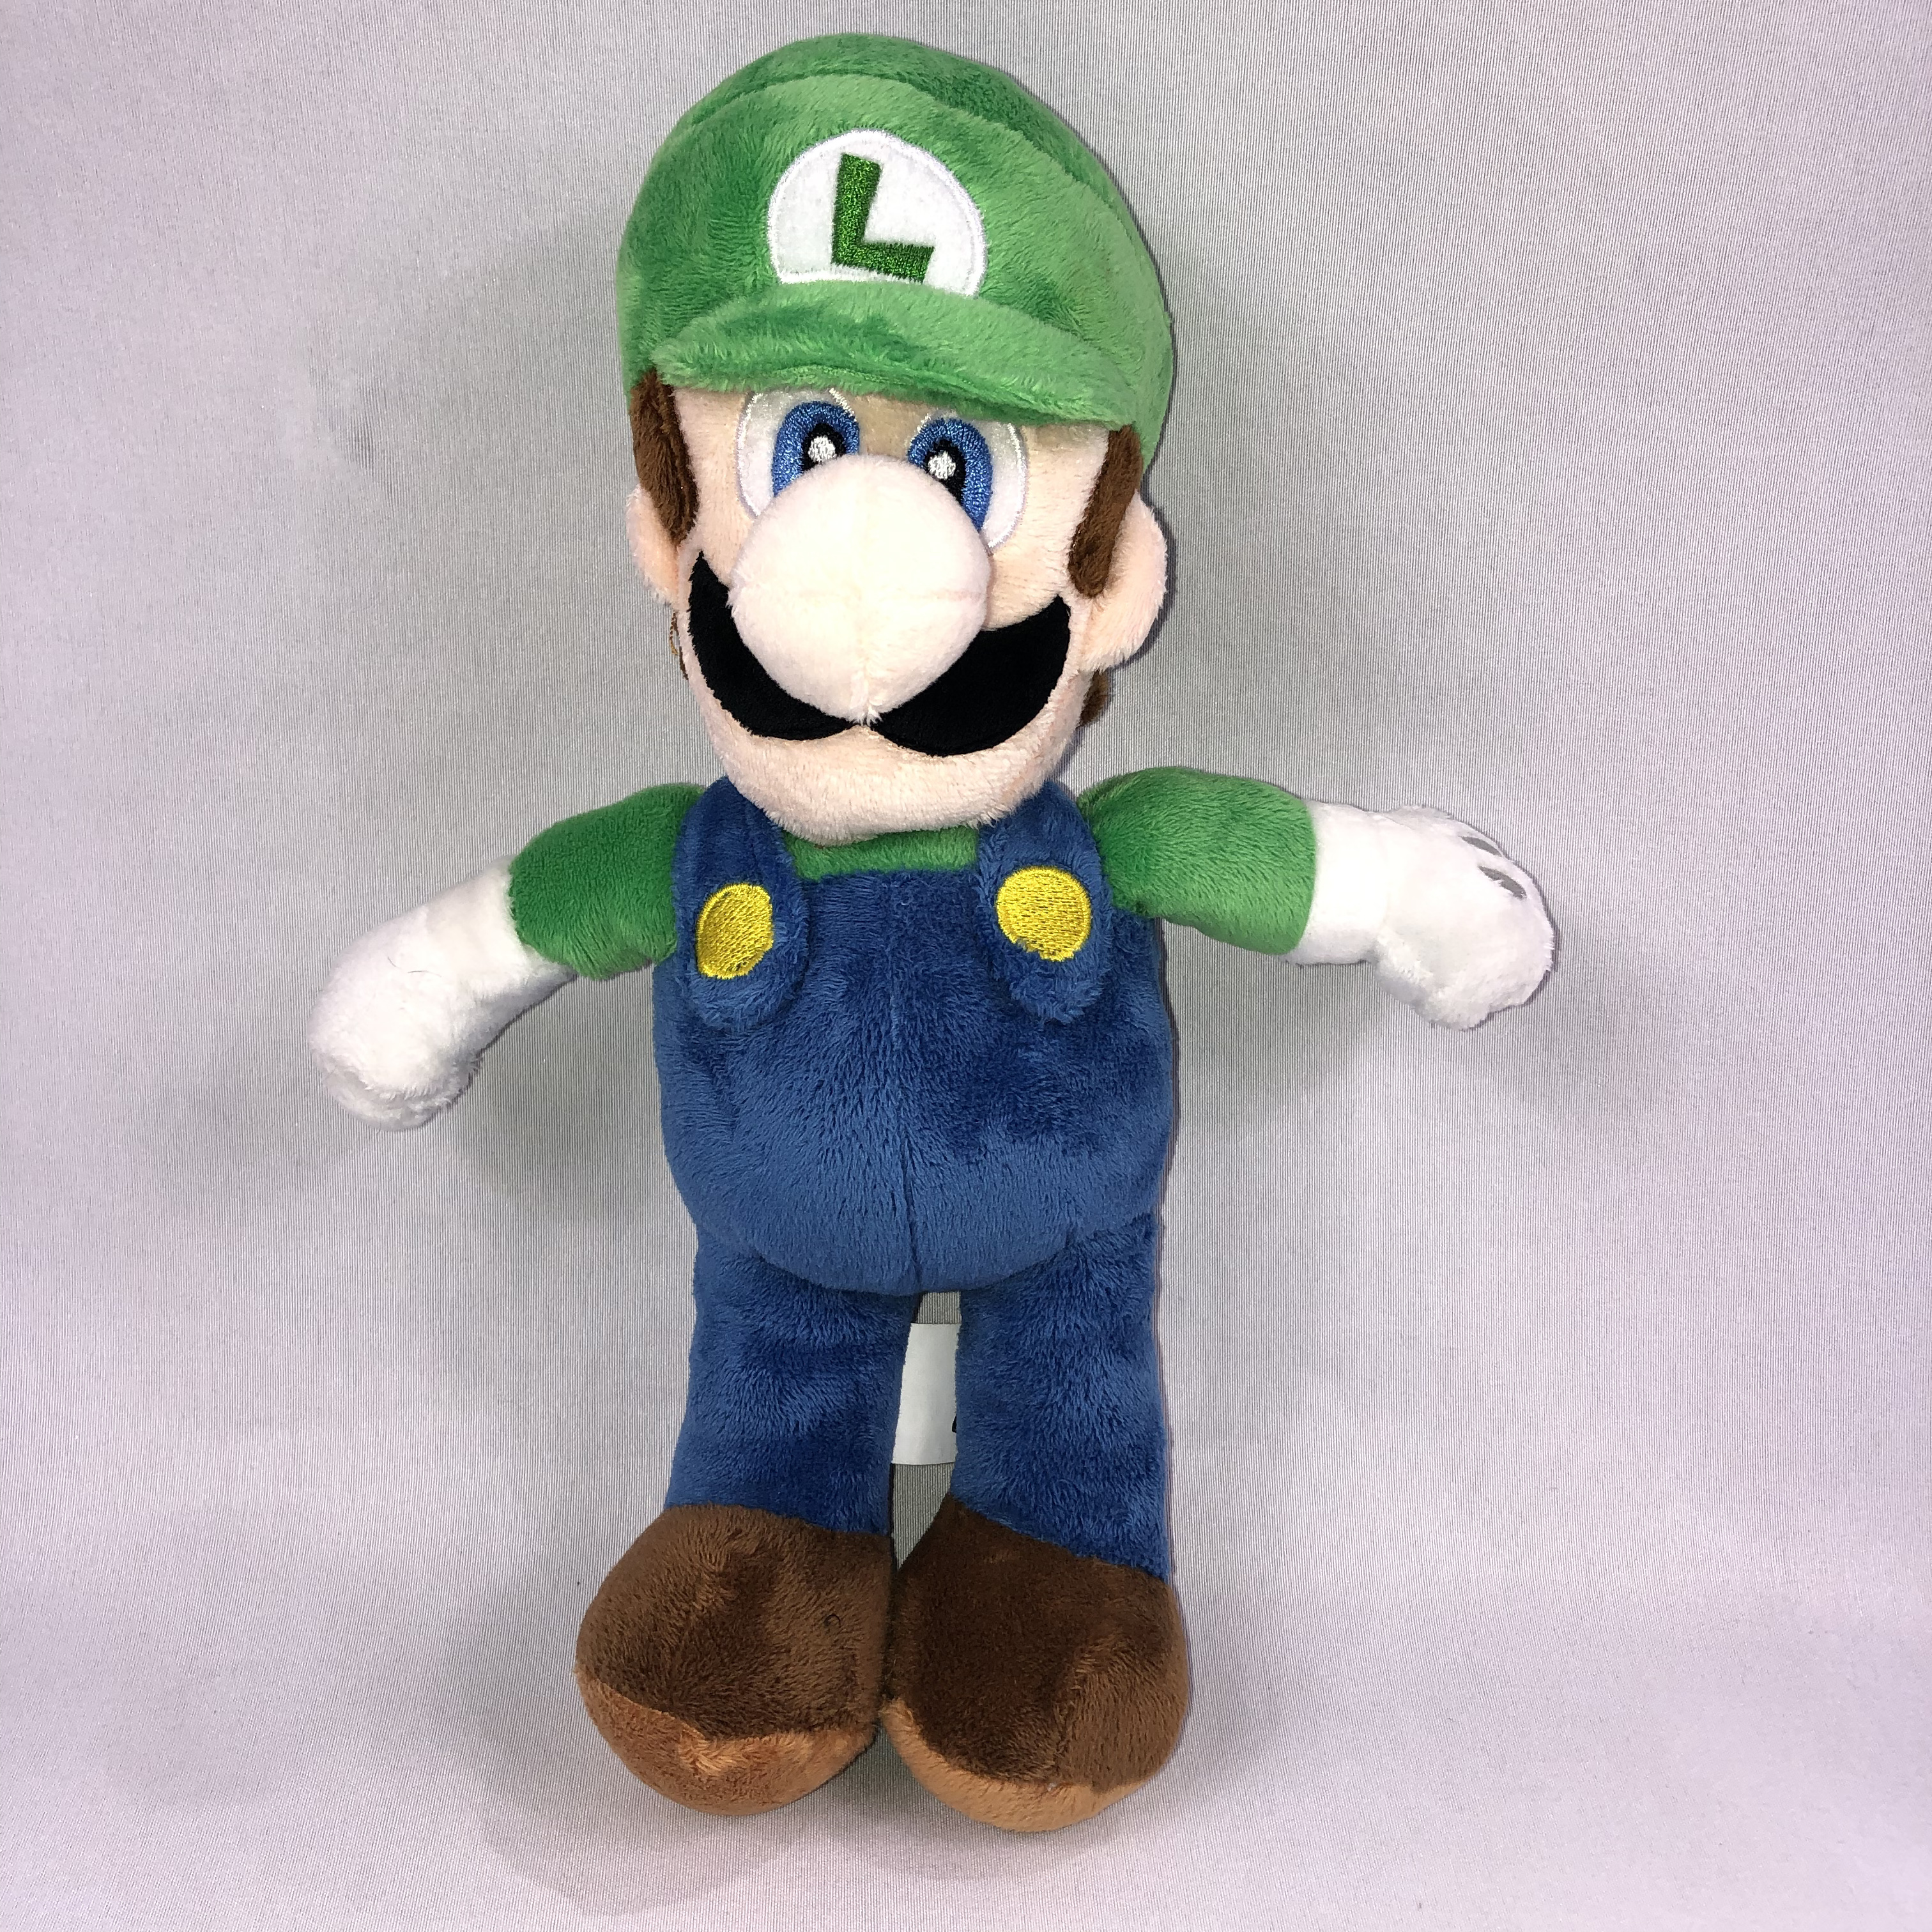 Super Mario 12" Plush Luigi by Nintendo C9